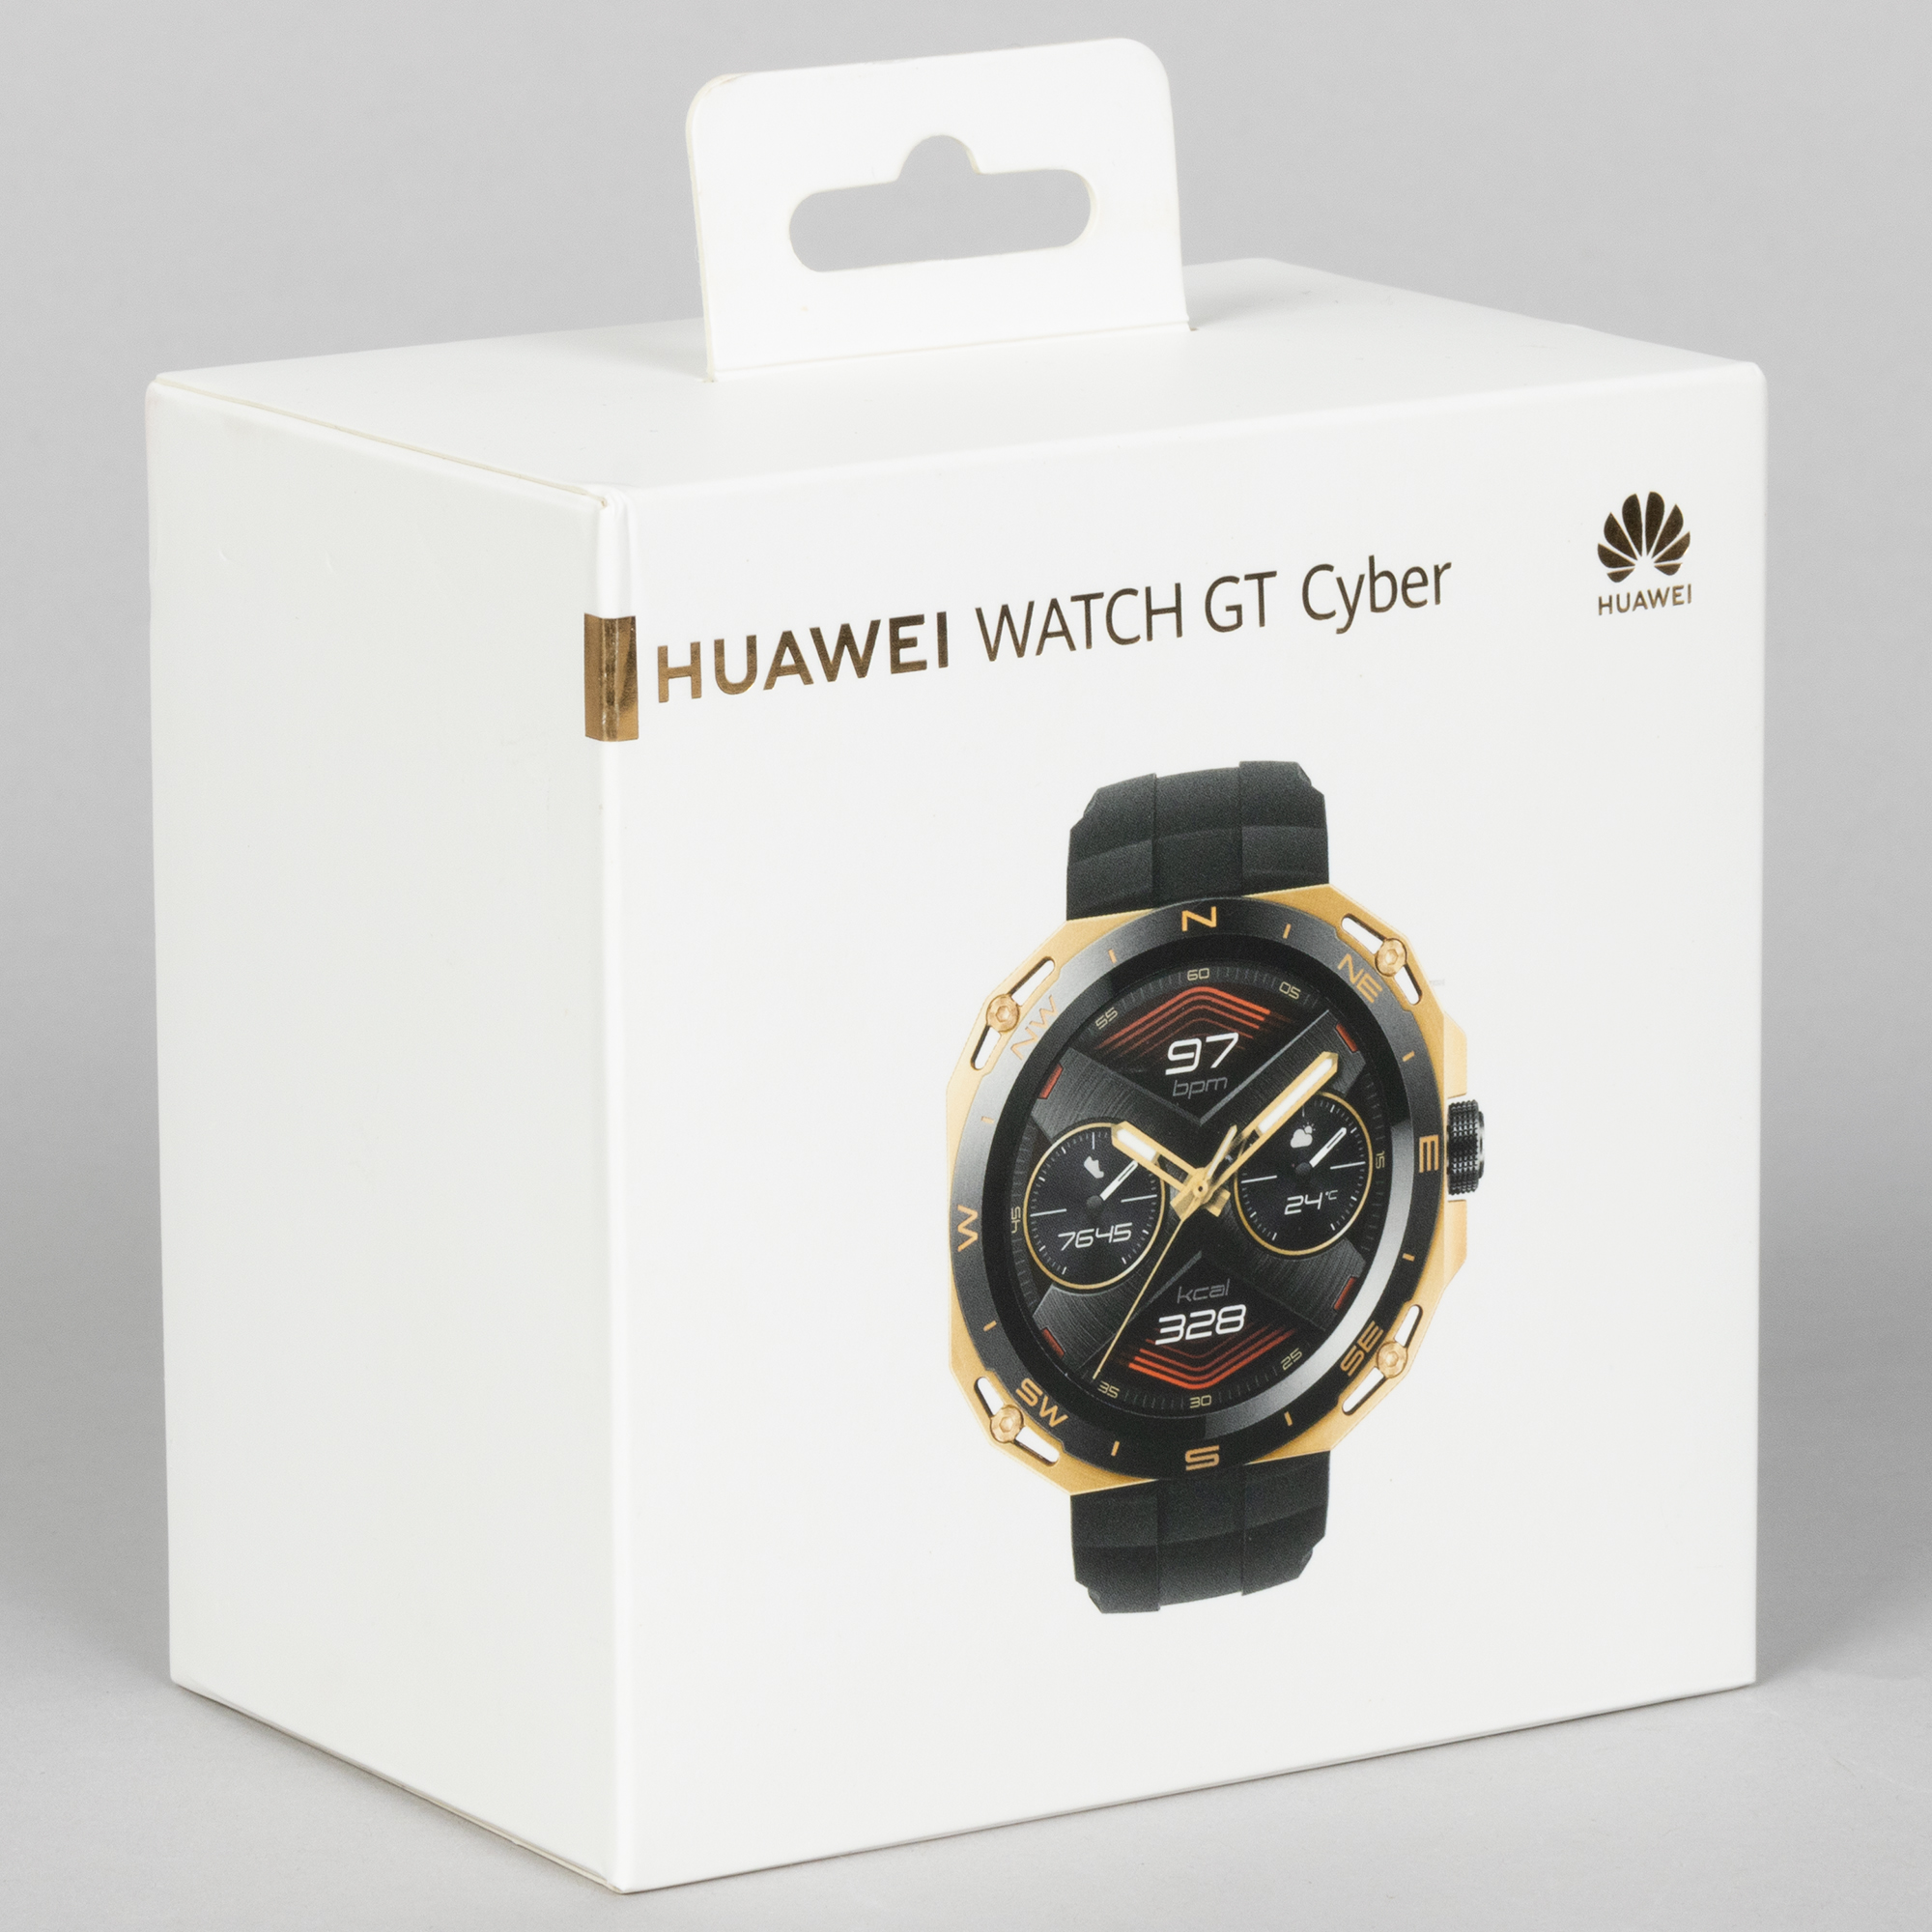 Смарт часы gt cyber. Часы Huawei Cyber gt. Оригинальные коробки часов мудмастер. Коробка для вотч сериус 4. Смарт часы коробка с ВБ.